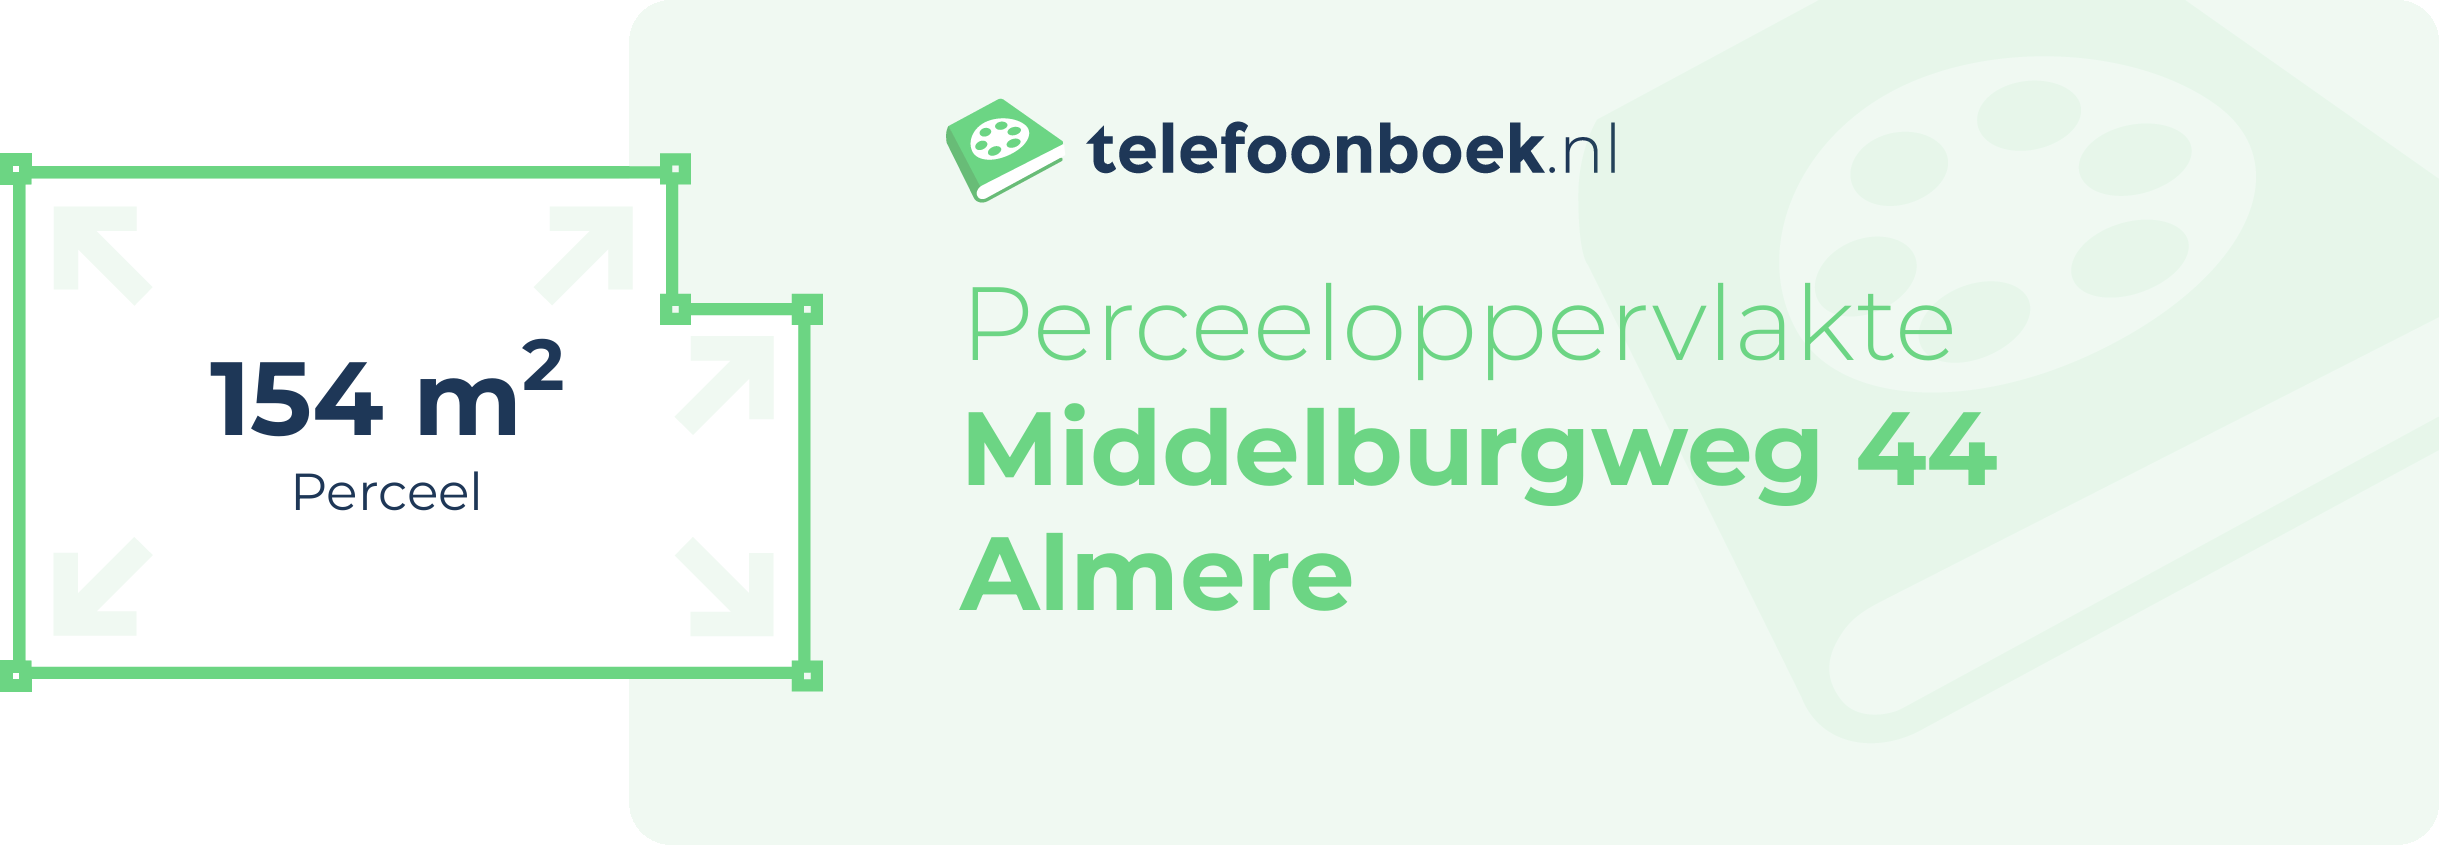 Perceeloppervlakte Middelburgweg 44 Almere